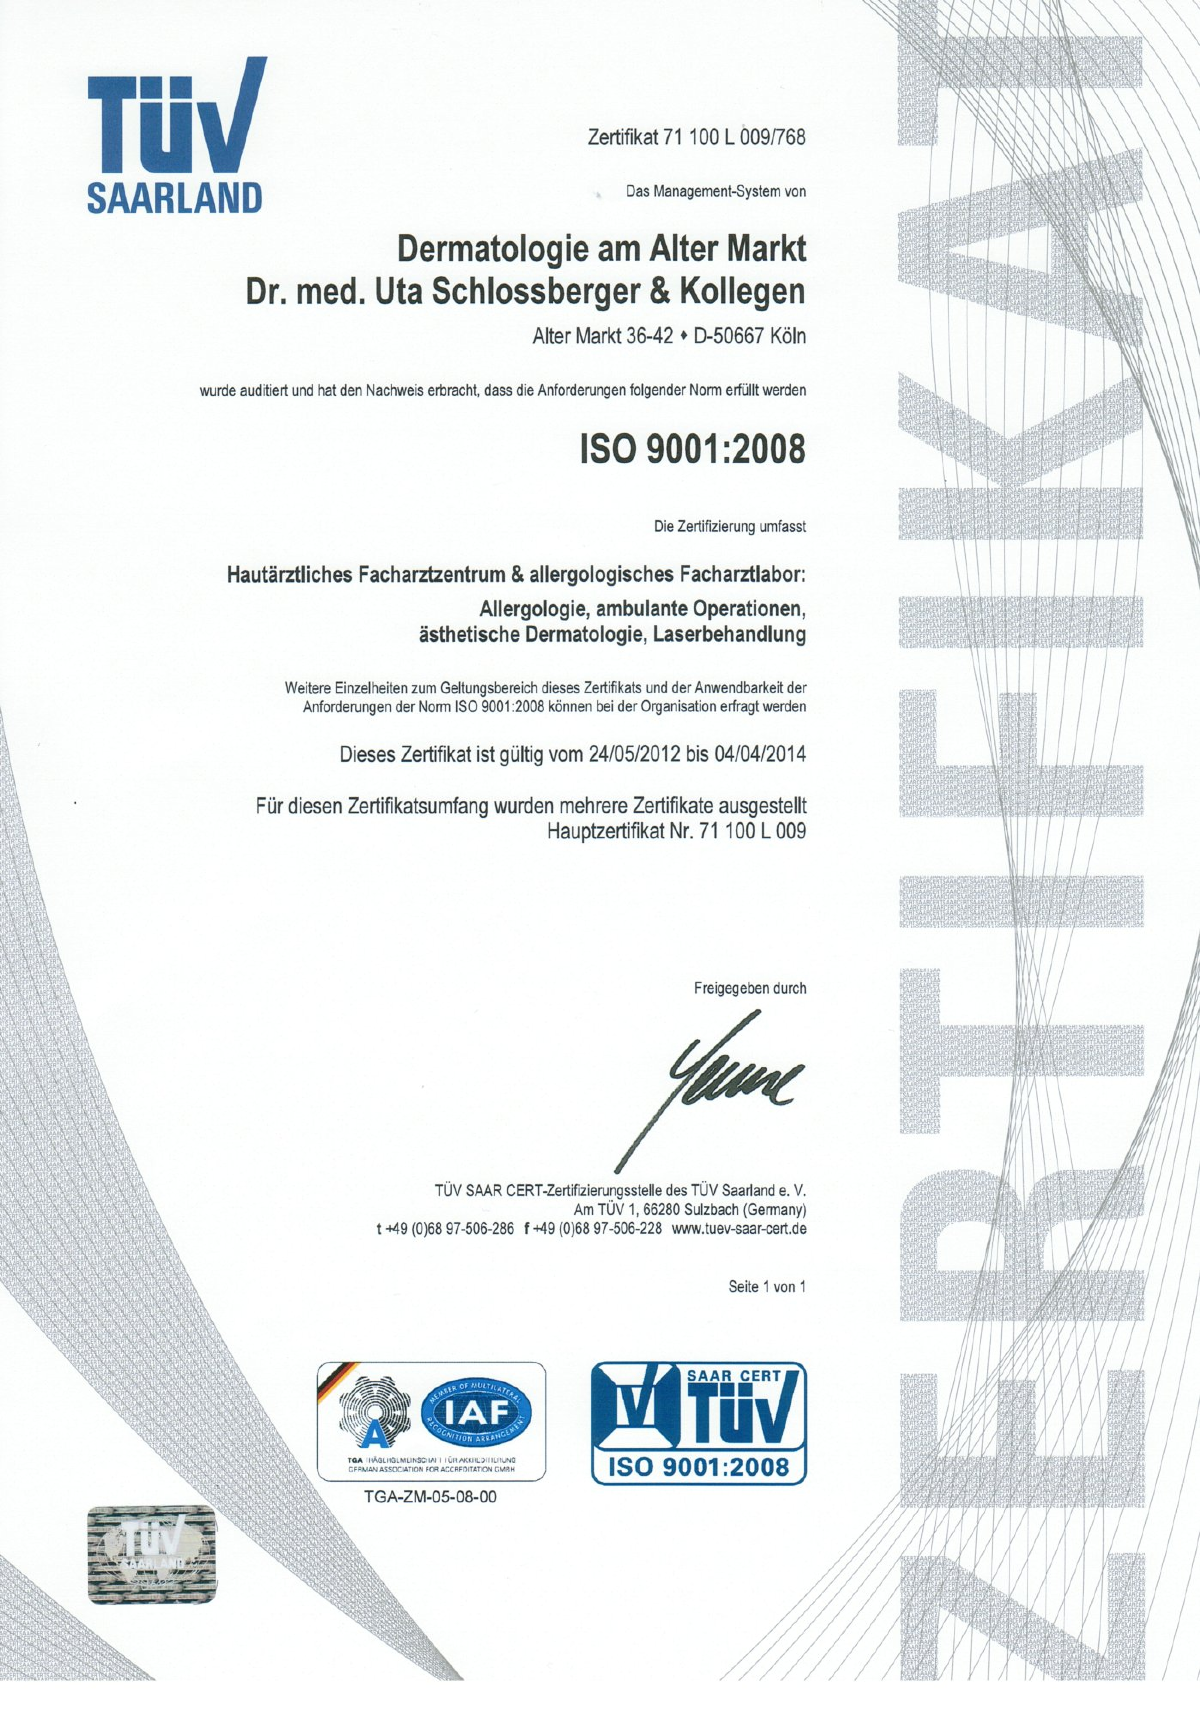 Unsere Praxis Dermatologie am Alter Markt Dr.Schlossberger und Kollegen ist TÜV-zertifiziert